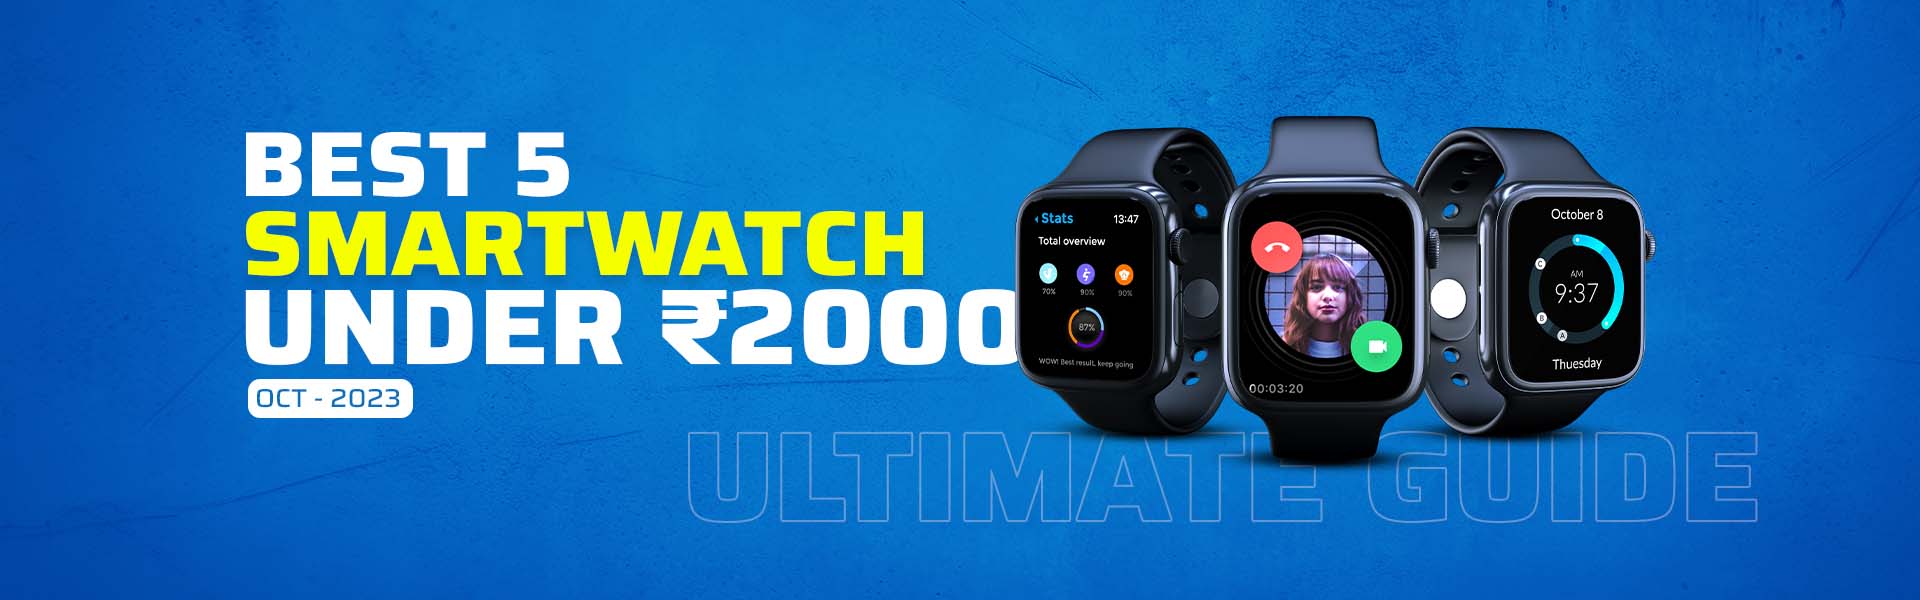 best 5 smartwatch under ₹2000